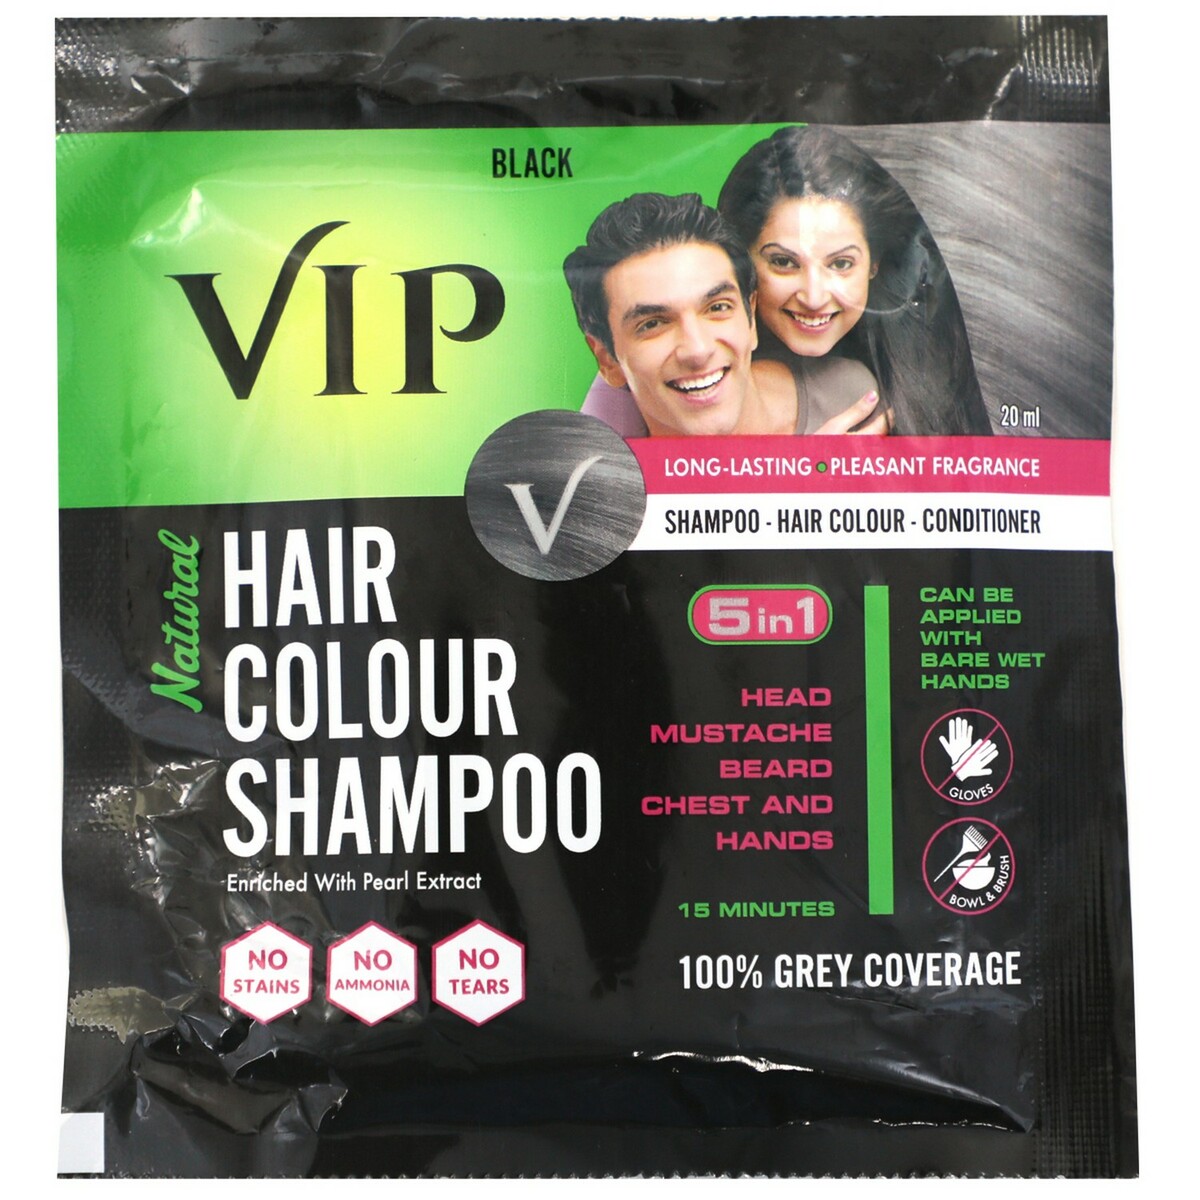 VIP hair colour shampoo black 20ml